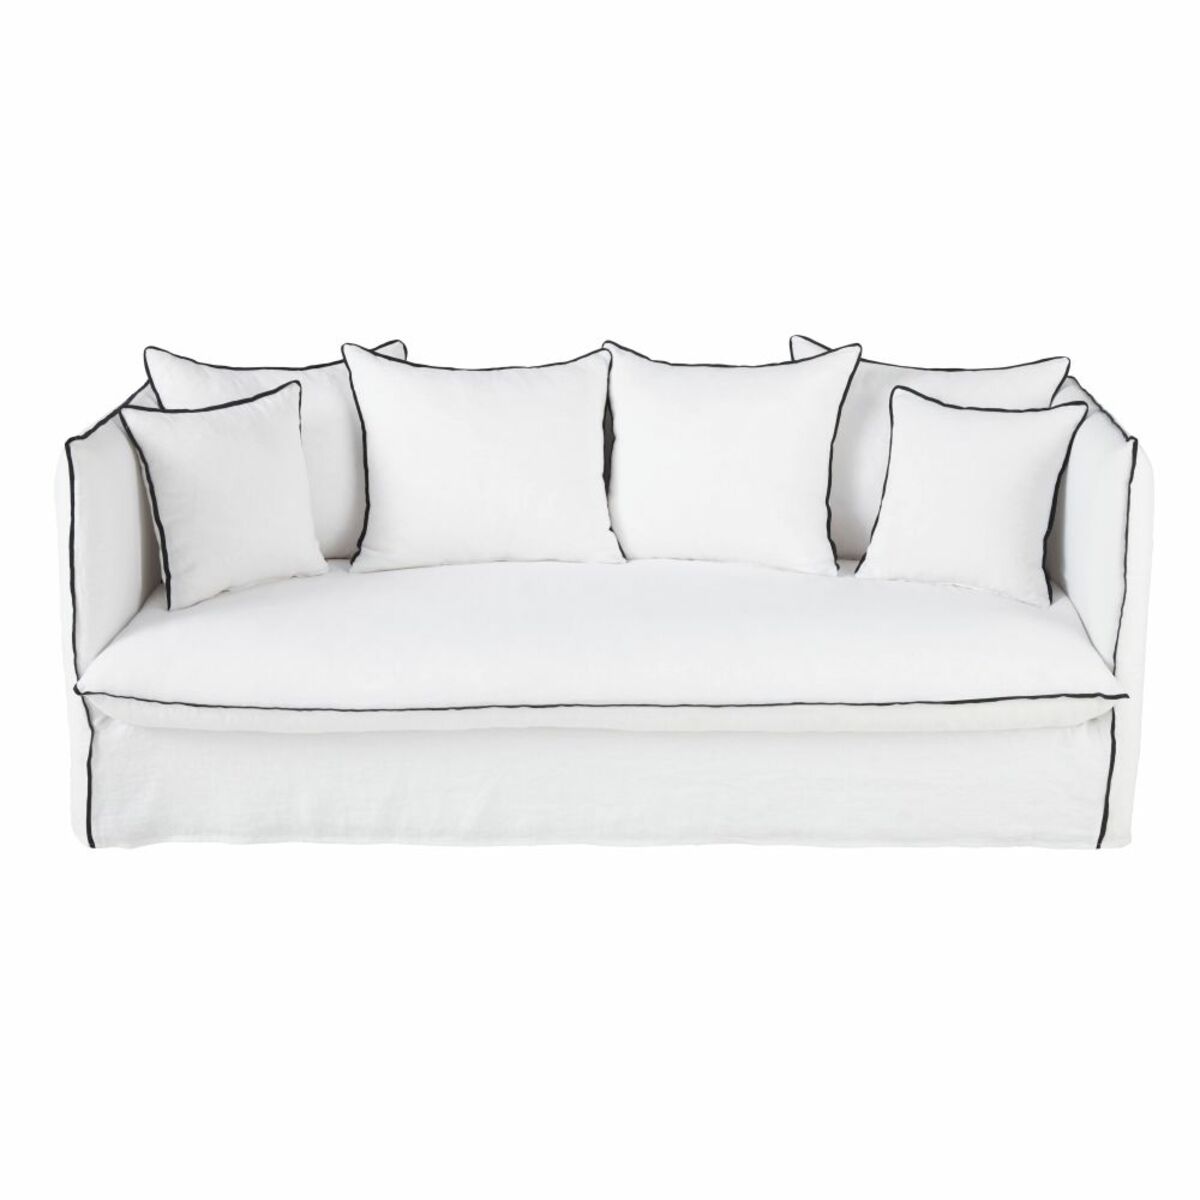 Sofá cama de 3/4 plazas de lino lavado blanco con volantes negros